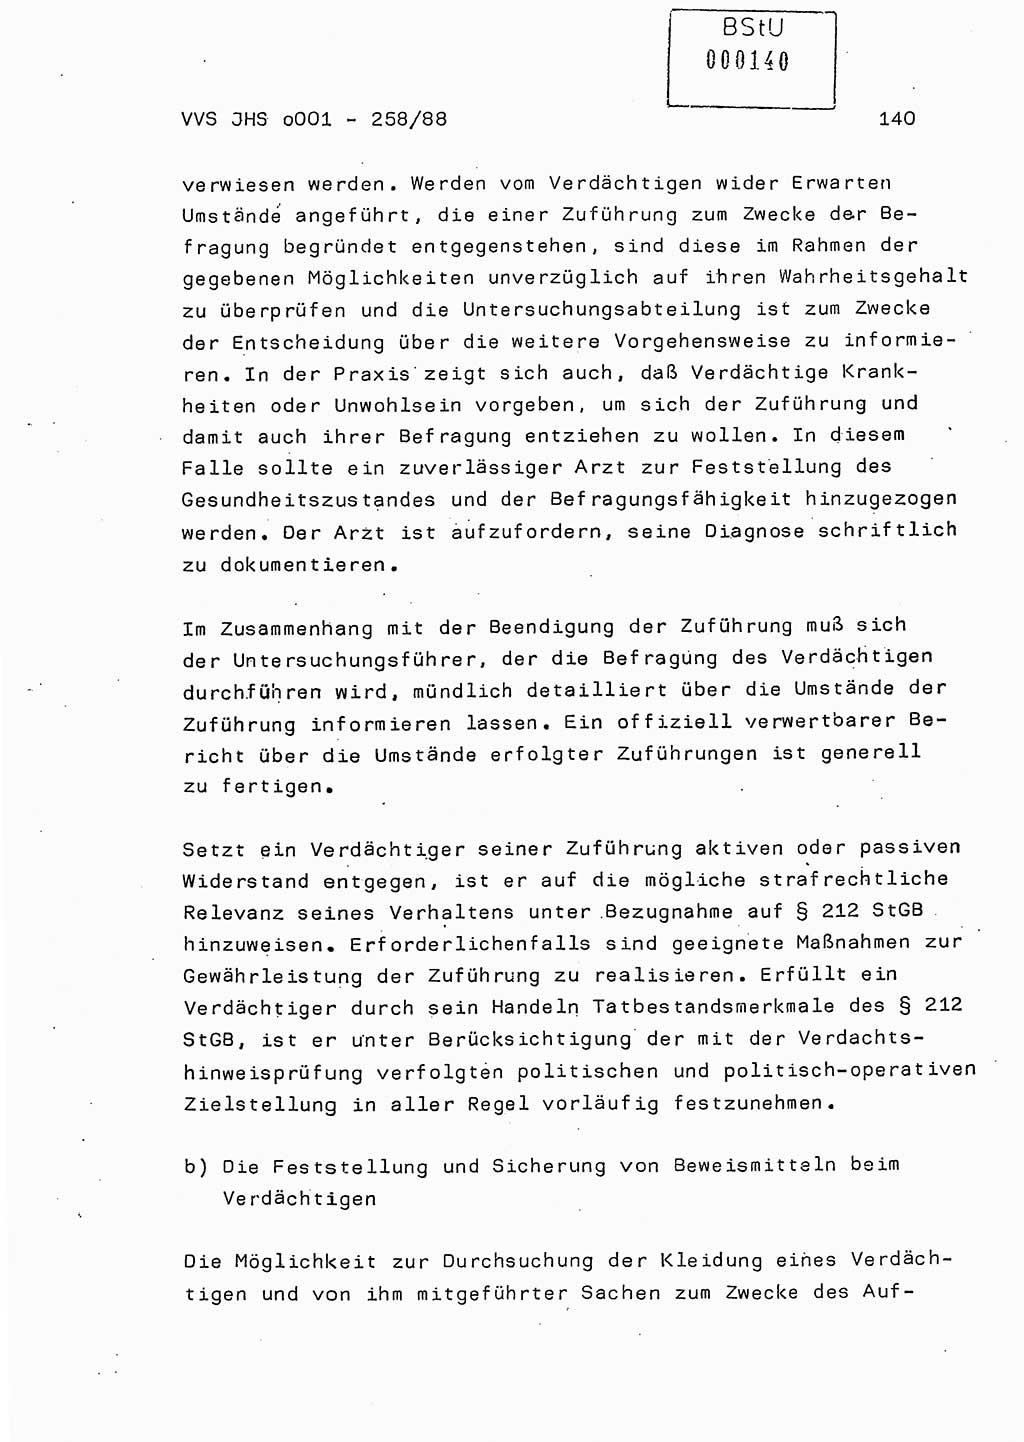 Dissertation, Oberleutnant Uwe Kärsten (JHS), Hauptmann Dr. Joachim Henkel (JHS), Oberstleutnant Werner Mählitz (Leiter der Abt. Ⅸ BV Rostock), Oberstleutnant Jürgen Tröge (HA Ⅸ/AKG), Oberstleutnant Winfried Ziegler (HA Ⅸ/9), Major Wolf-Rüdiger Wurzler (JHS), Ministerium für Staatssicherheit (MfS) [Deutsche Demokratische Republik (DDR)], Juristische Hochschule (JHS), Vertrauliche Verschlußsache (VVS) o001-258/88, Potsdam 1988, Seite 140 (Diss. MfS DDR JHS VVS o001-258/88 1988, S. 140)